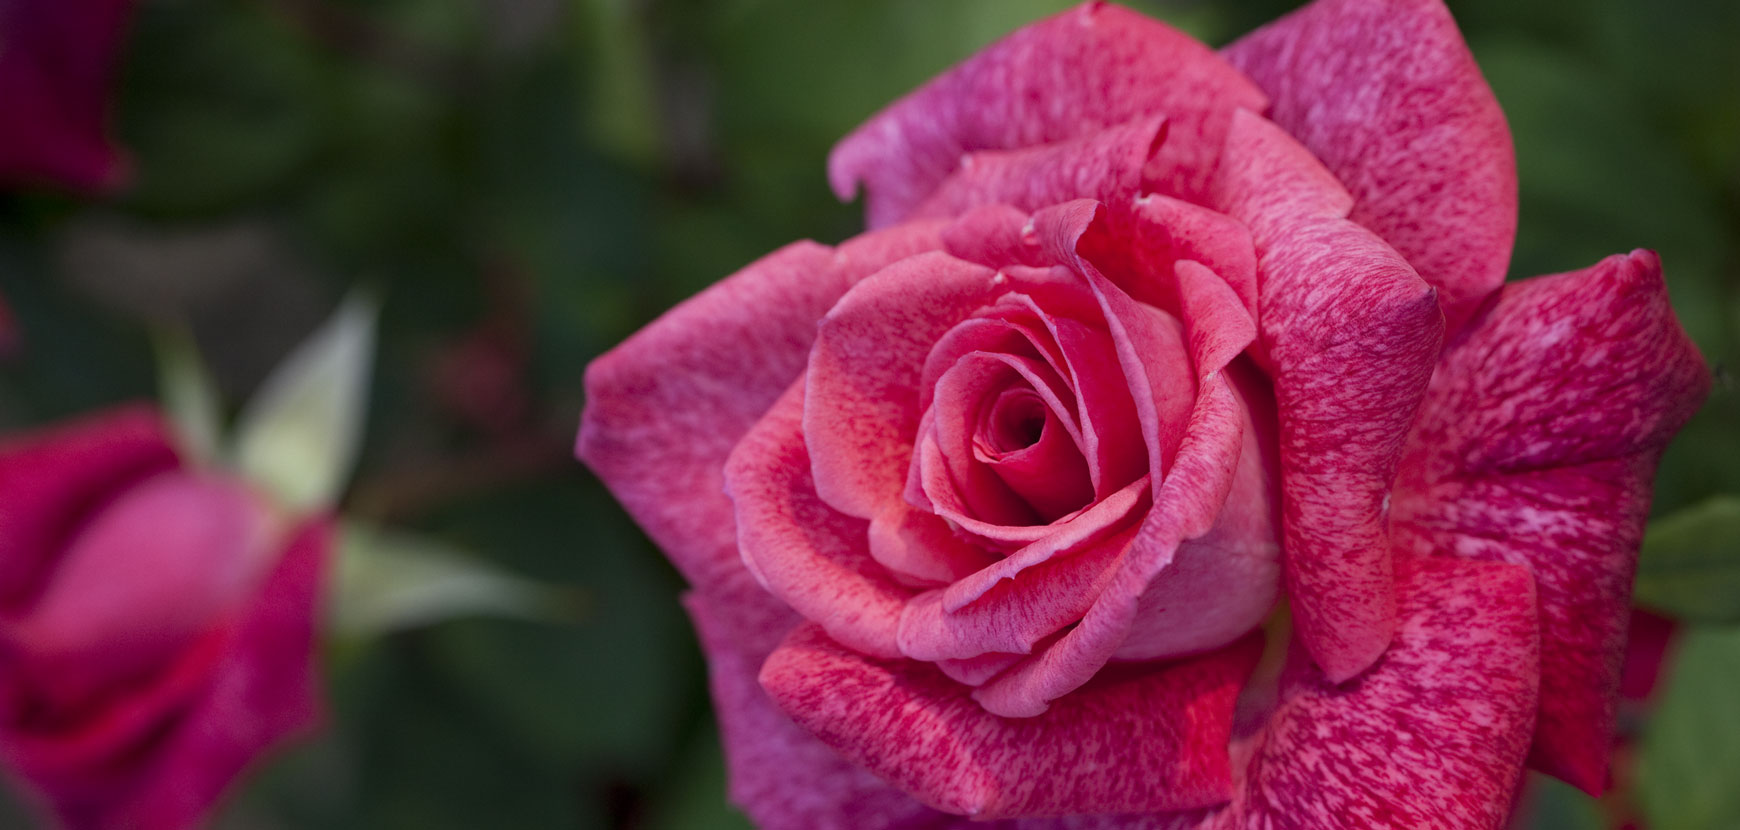 Rosiers roses : de la magie dans votre jardin